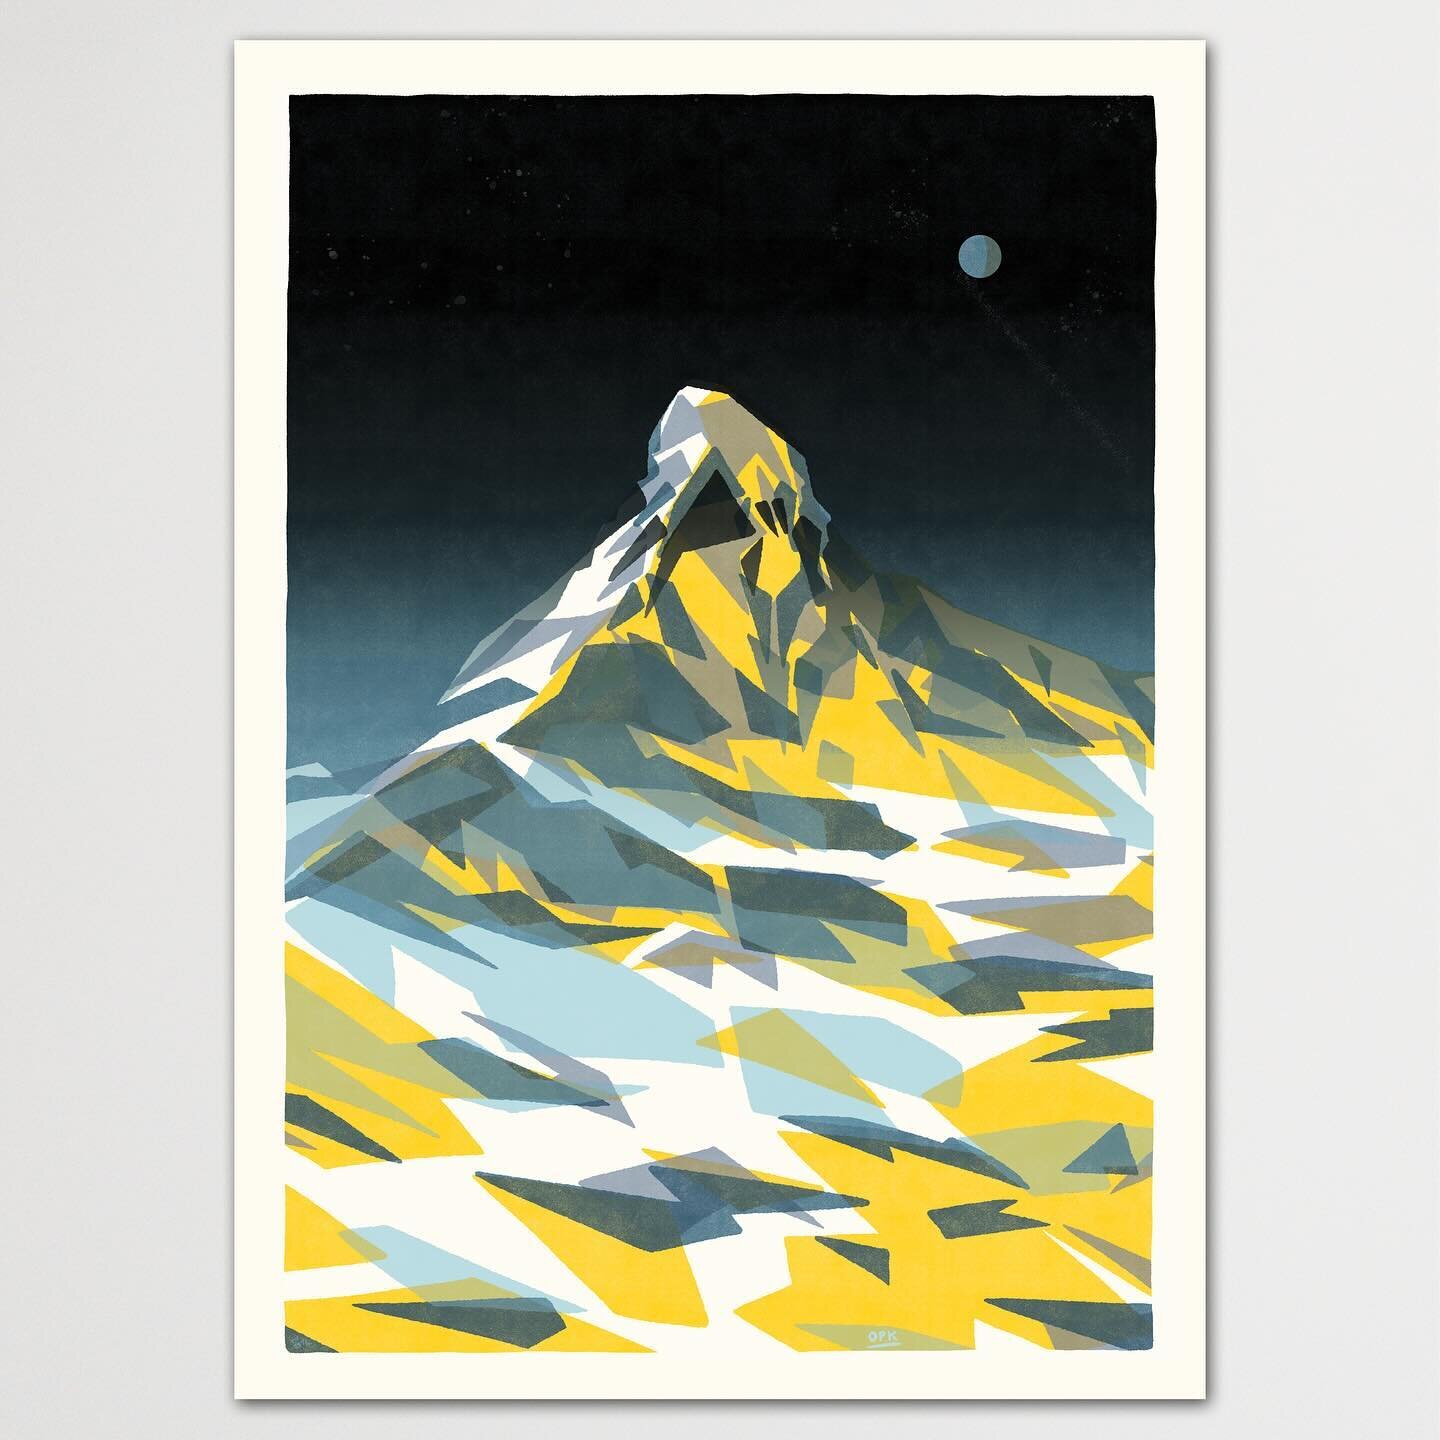 Den Matterhorn #horu als Siebdruck gibt es jetzt neu in unserem shop.opak.cc

siebdruck plakat mit 4 farben

#print #onlineshopping #shopak #printshop #postershop #screenprinting #illustration #matterhorn #zermatt #cervin #cervino #miswallis #wallis 